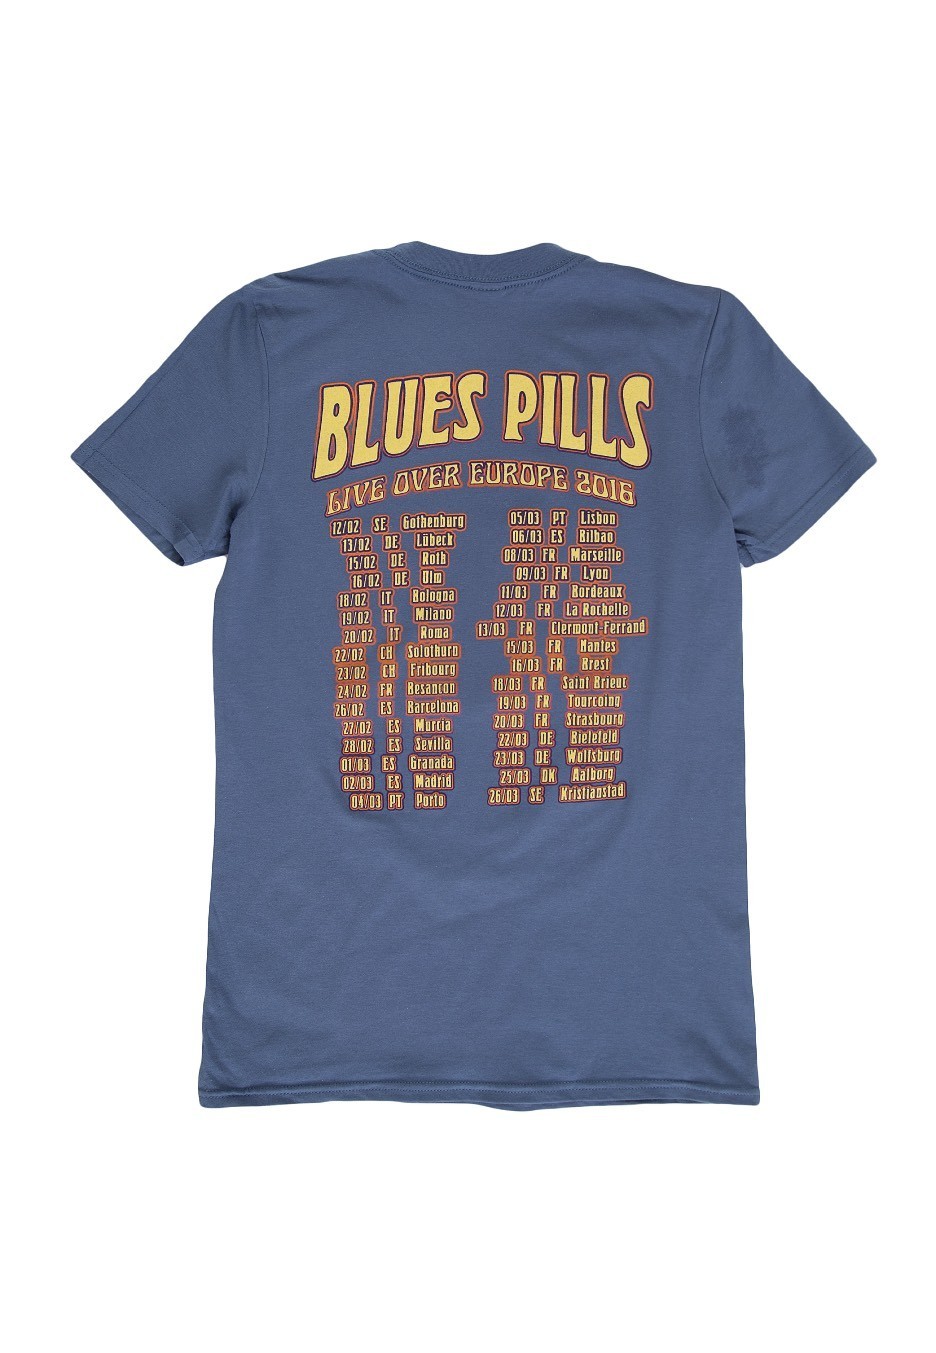 Blues Pills - Goddess Of Balance Tour - T-Shirt